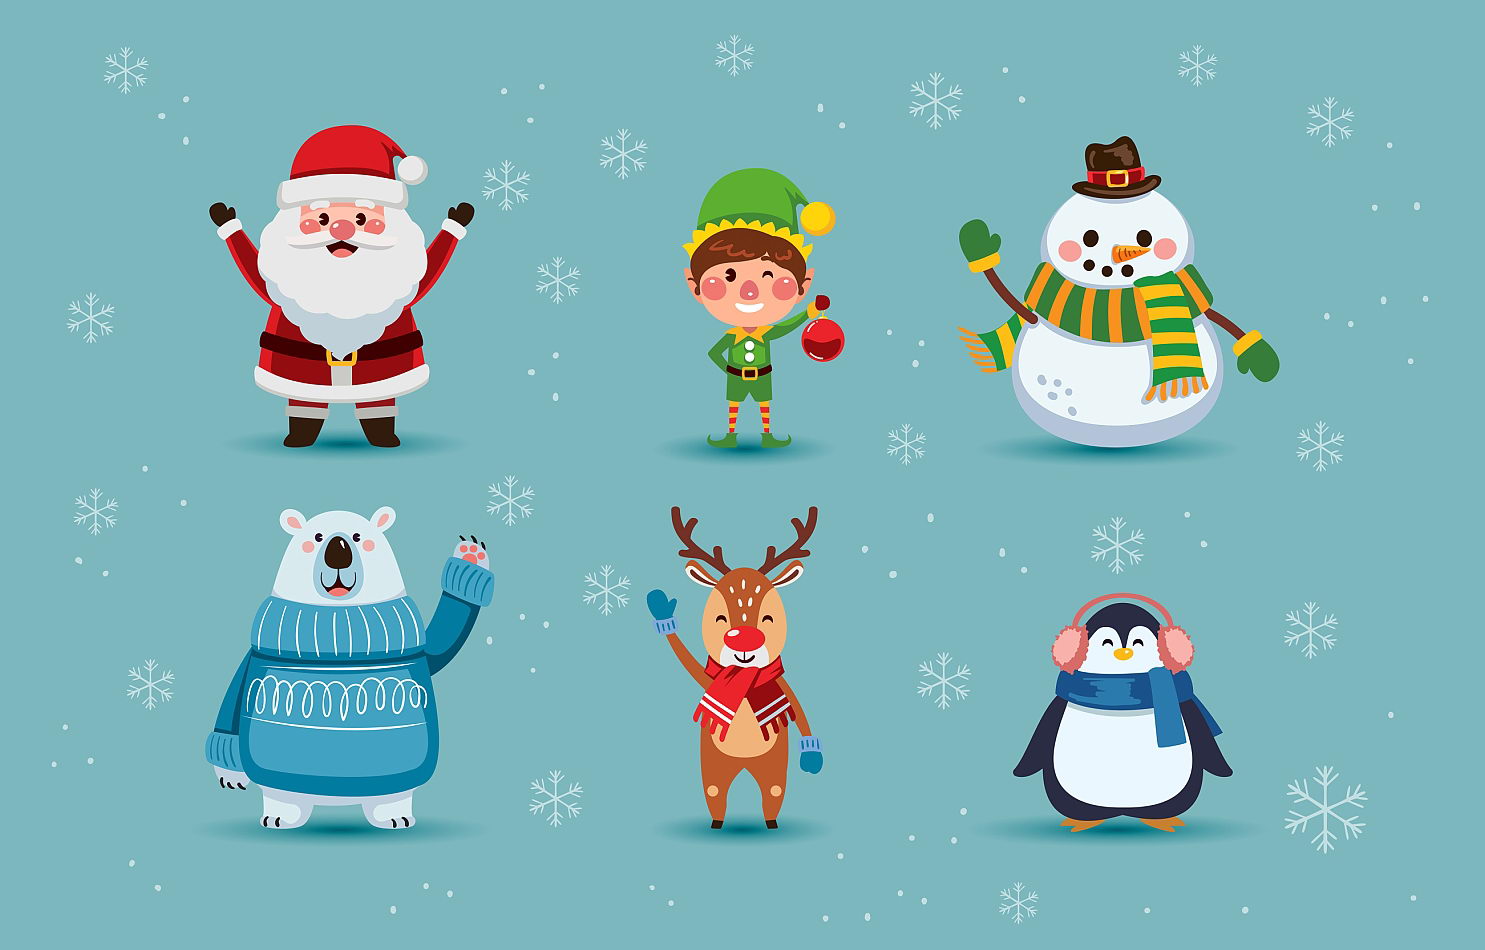 Printable Christmas Characters_51526